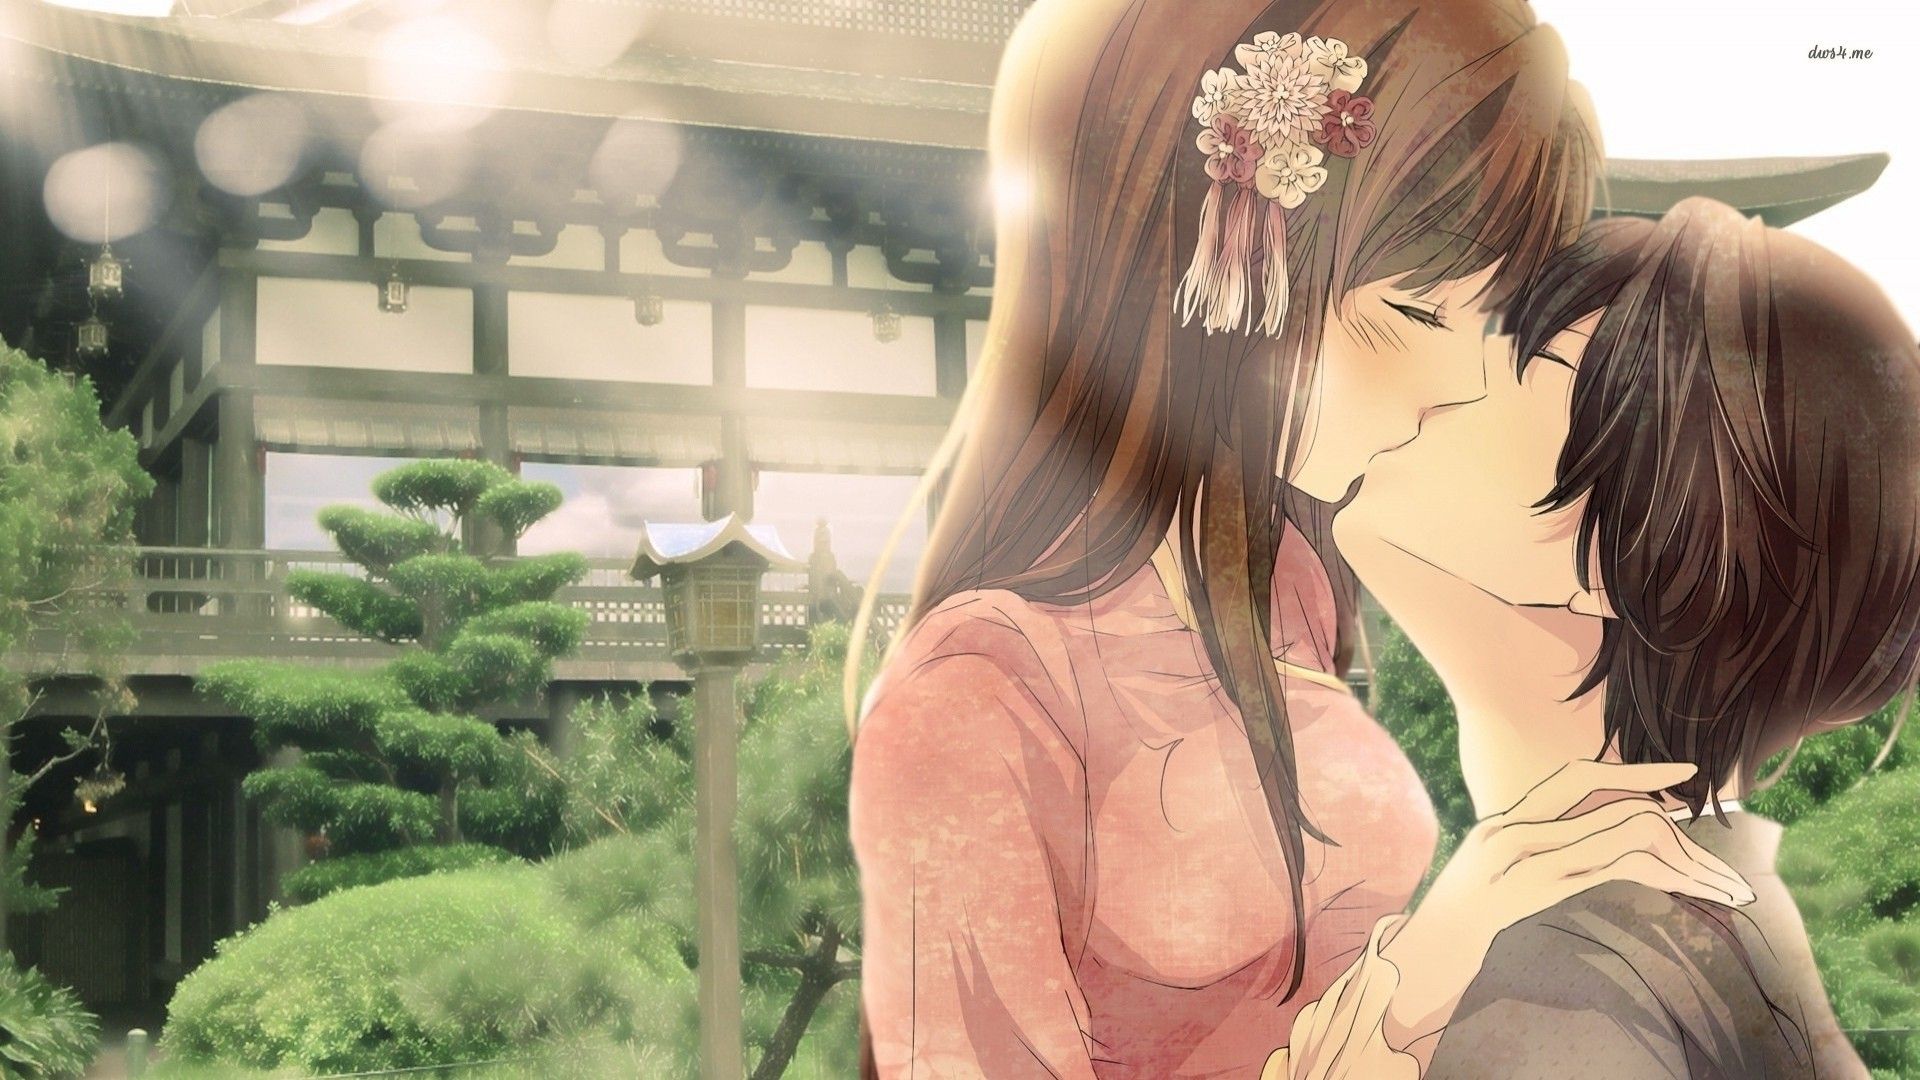 #anime girls, #kissing, #anime, wallpaper. Anime